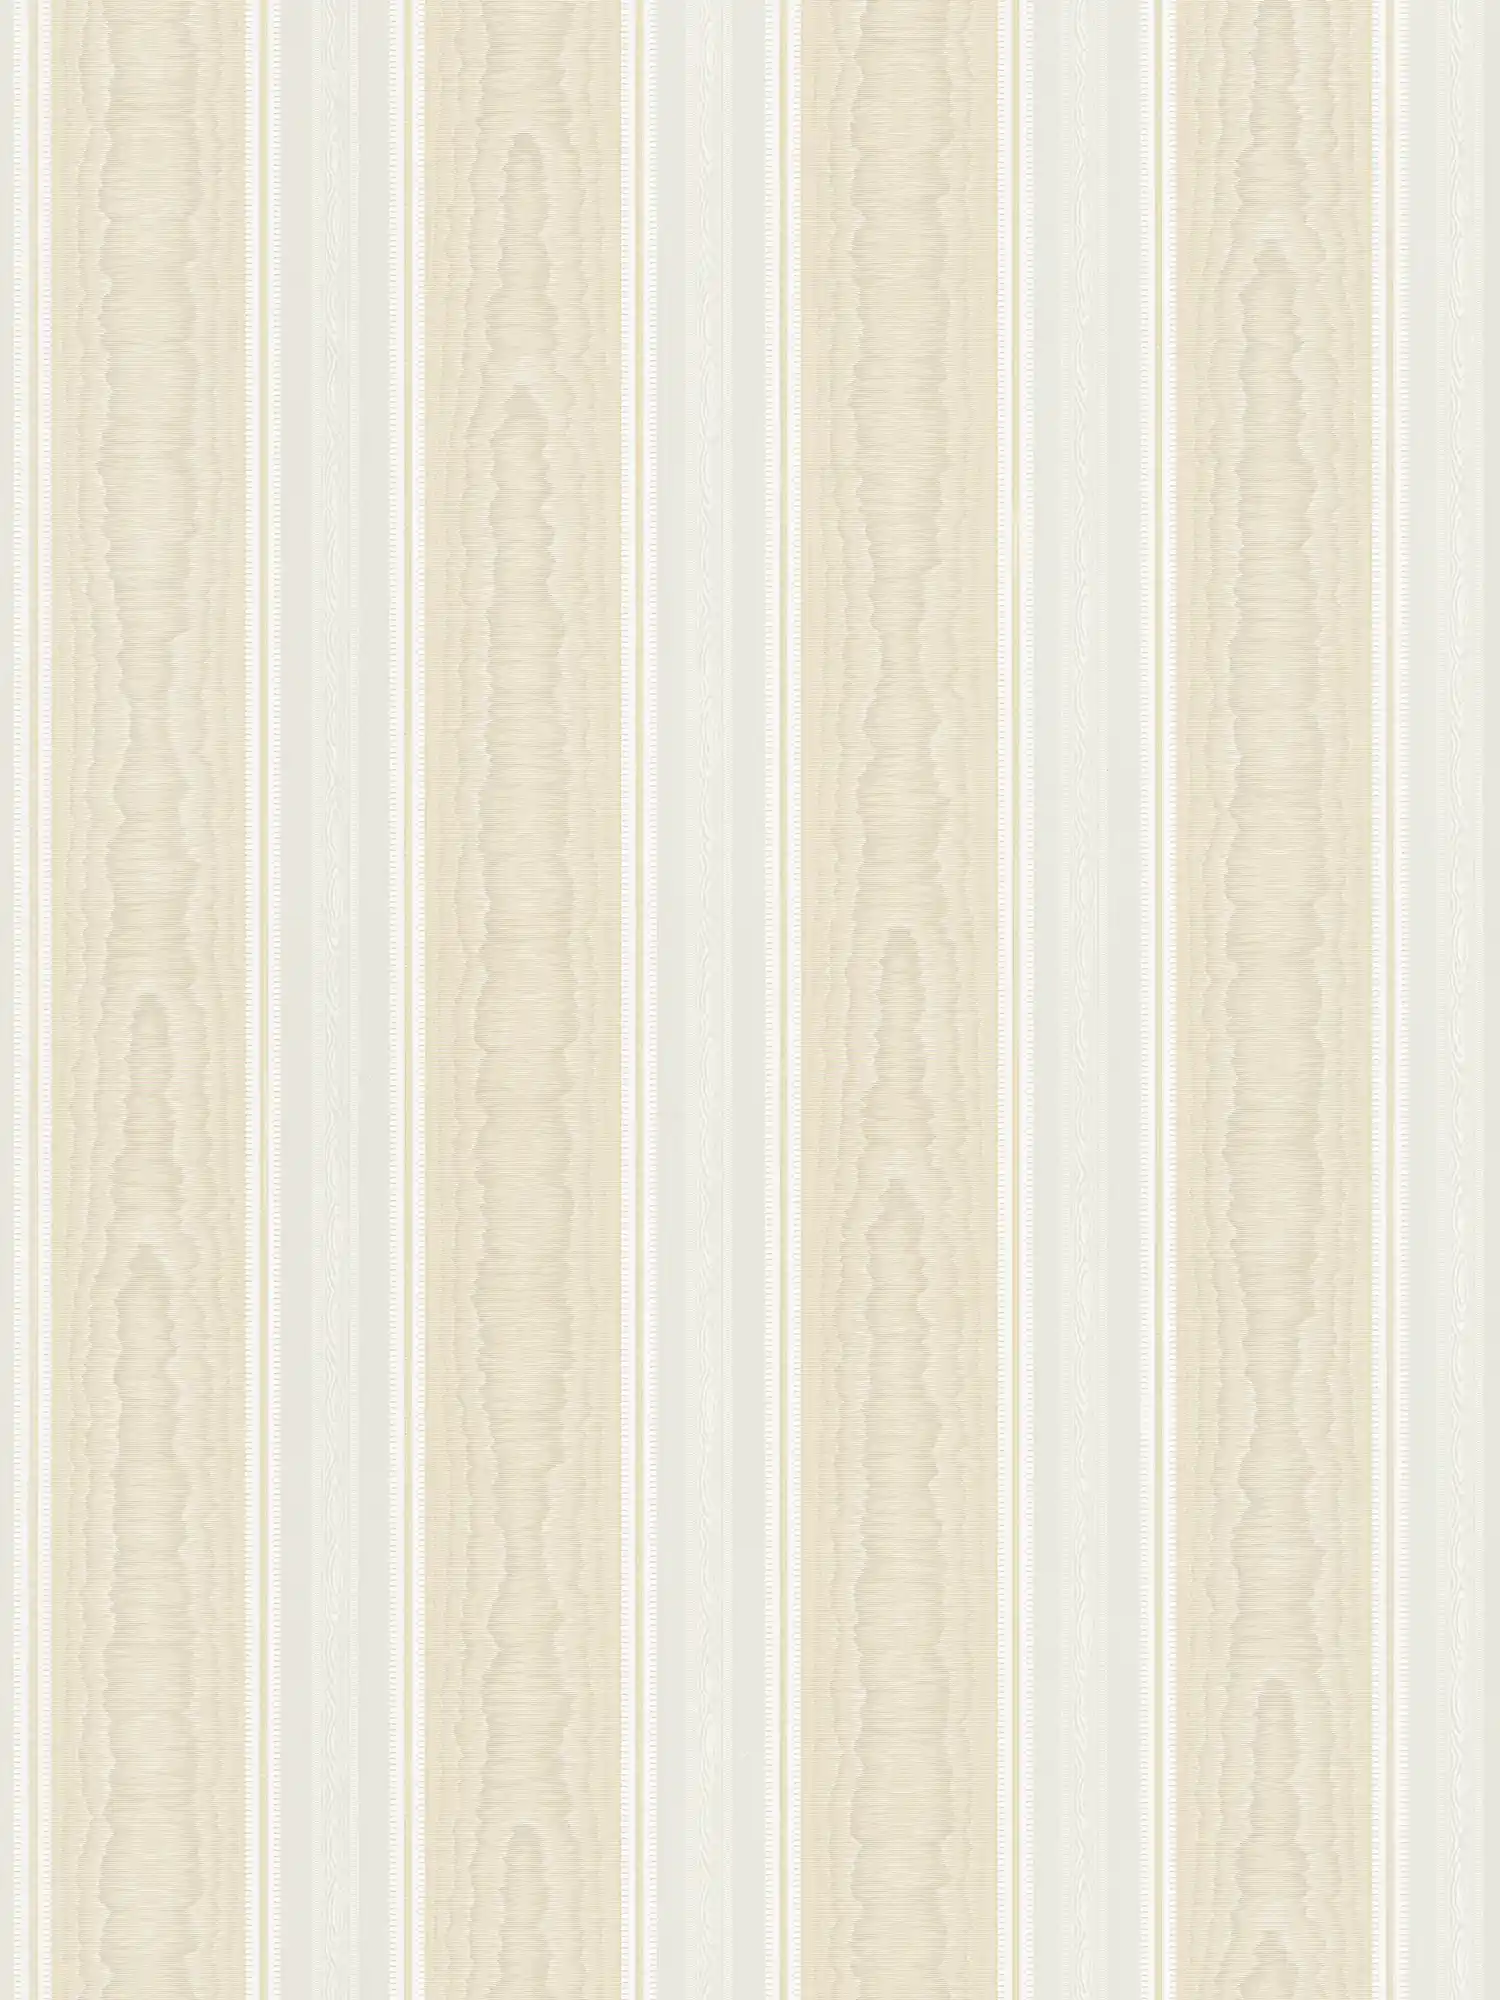 Carta da parati a righe con effetto moiré di seta - beige, bianco
